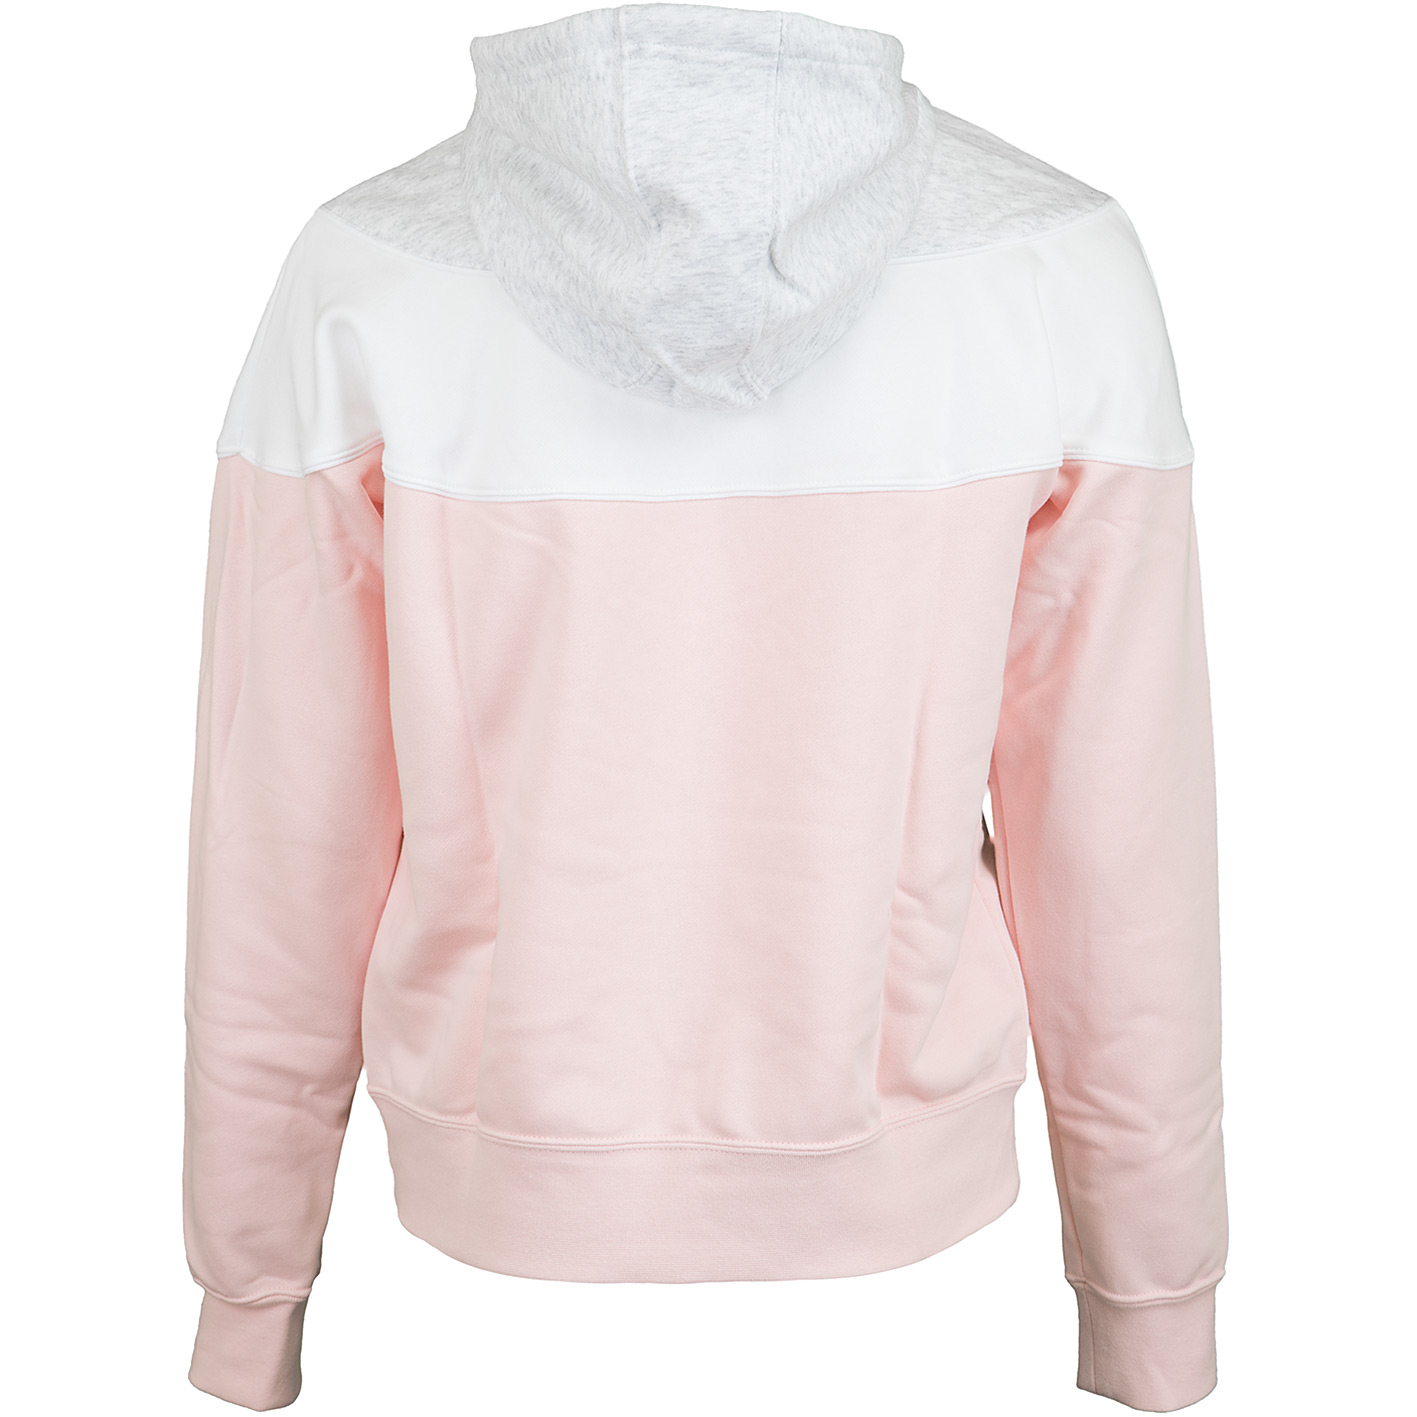 ☆ Nike Damen Hoody Heritage pink/weiß/grau - hier bestellen!